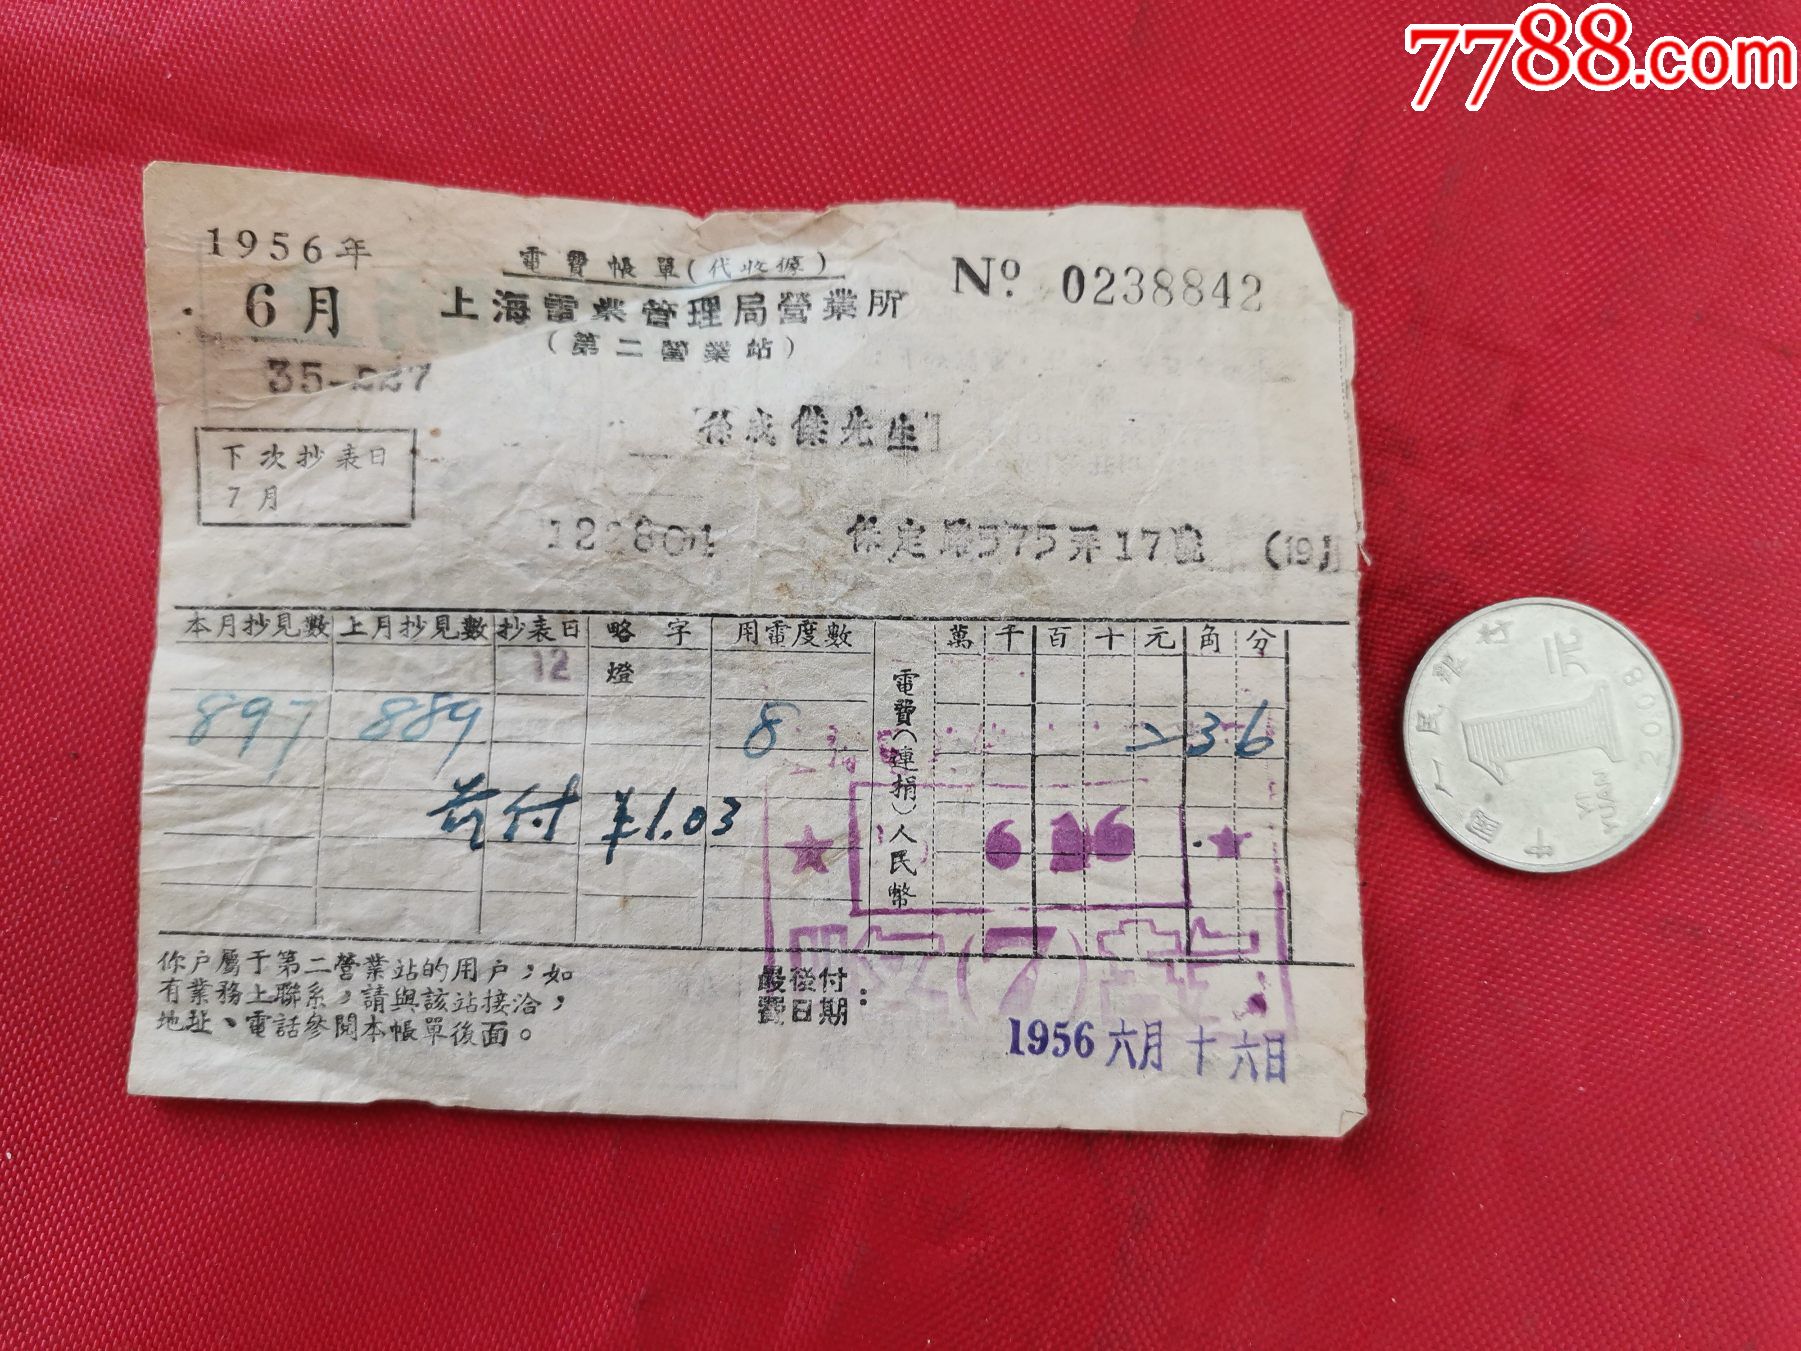 上海电业管理局营业所1956年6月电费账单背面怎样防止台风扇触电